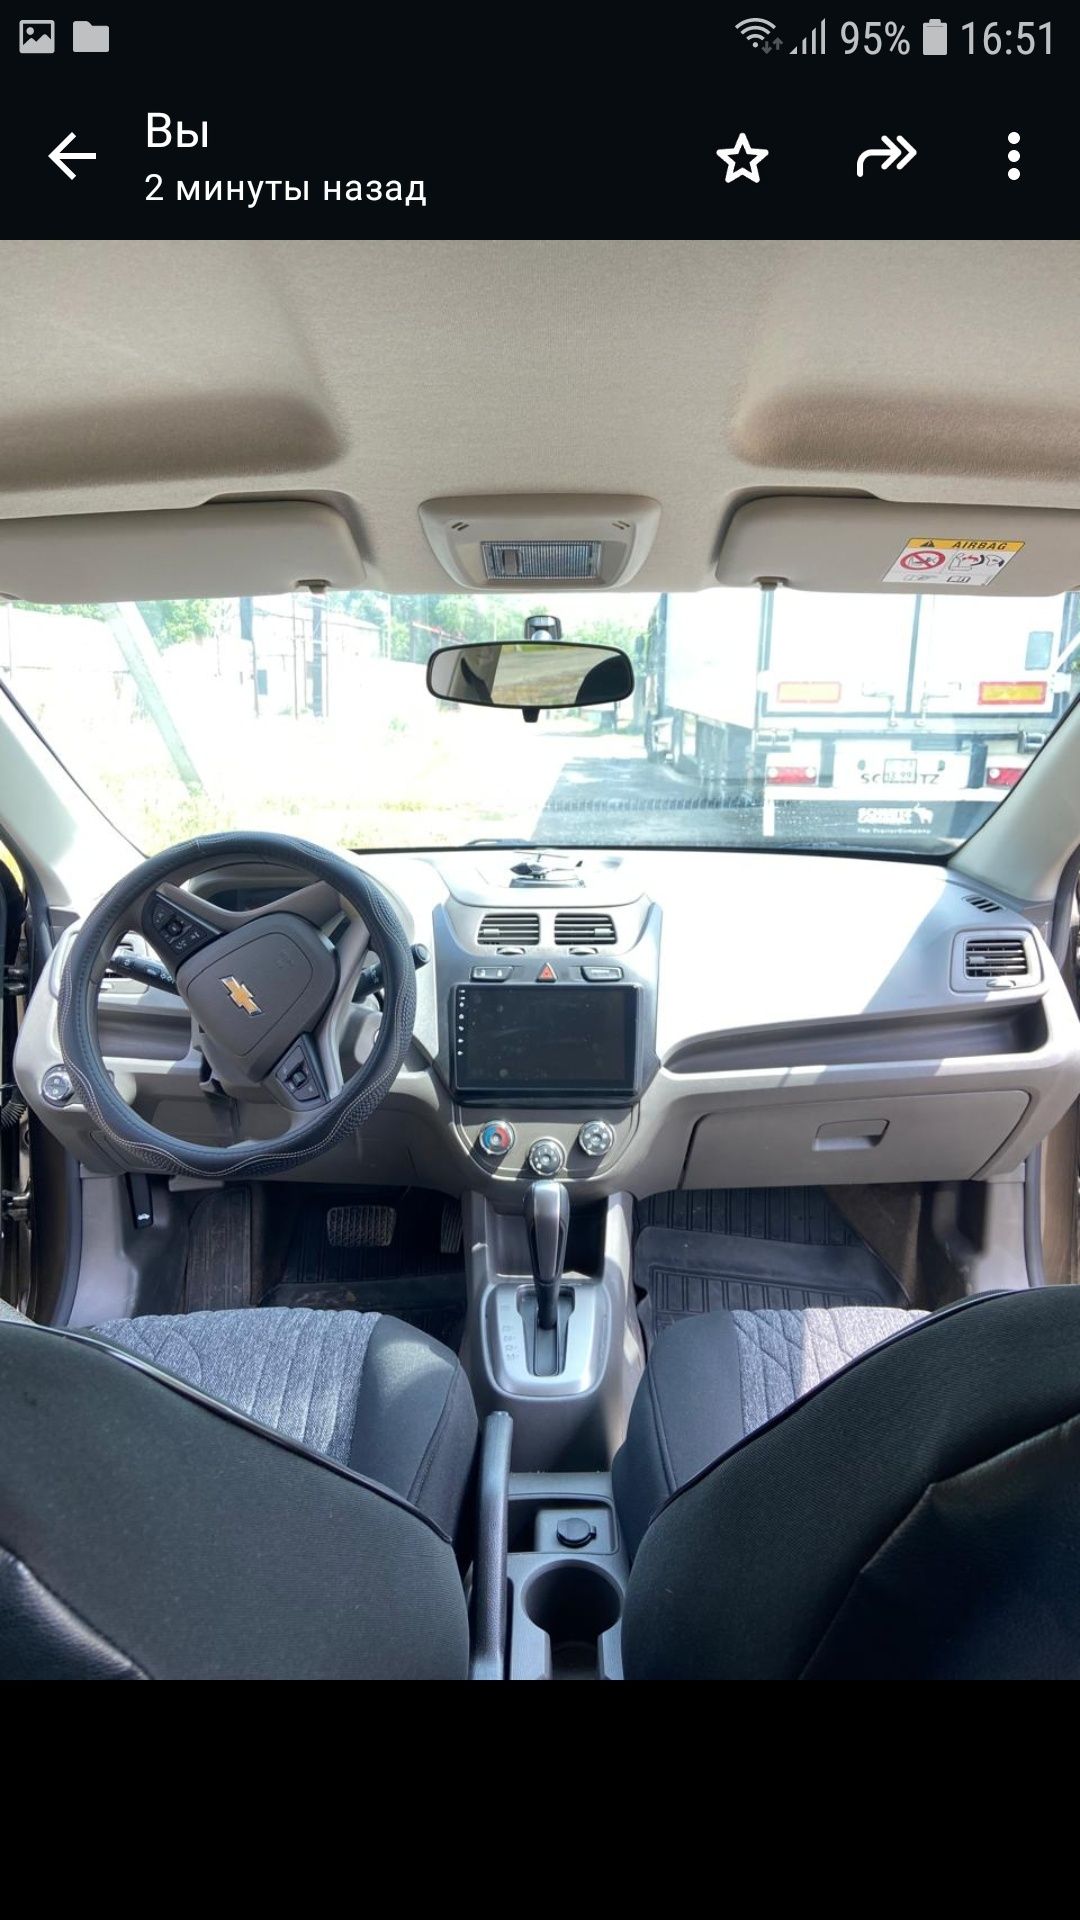 Chevrolet Cobalt полный люкс андроид монитор, мультирул.